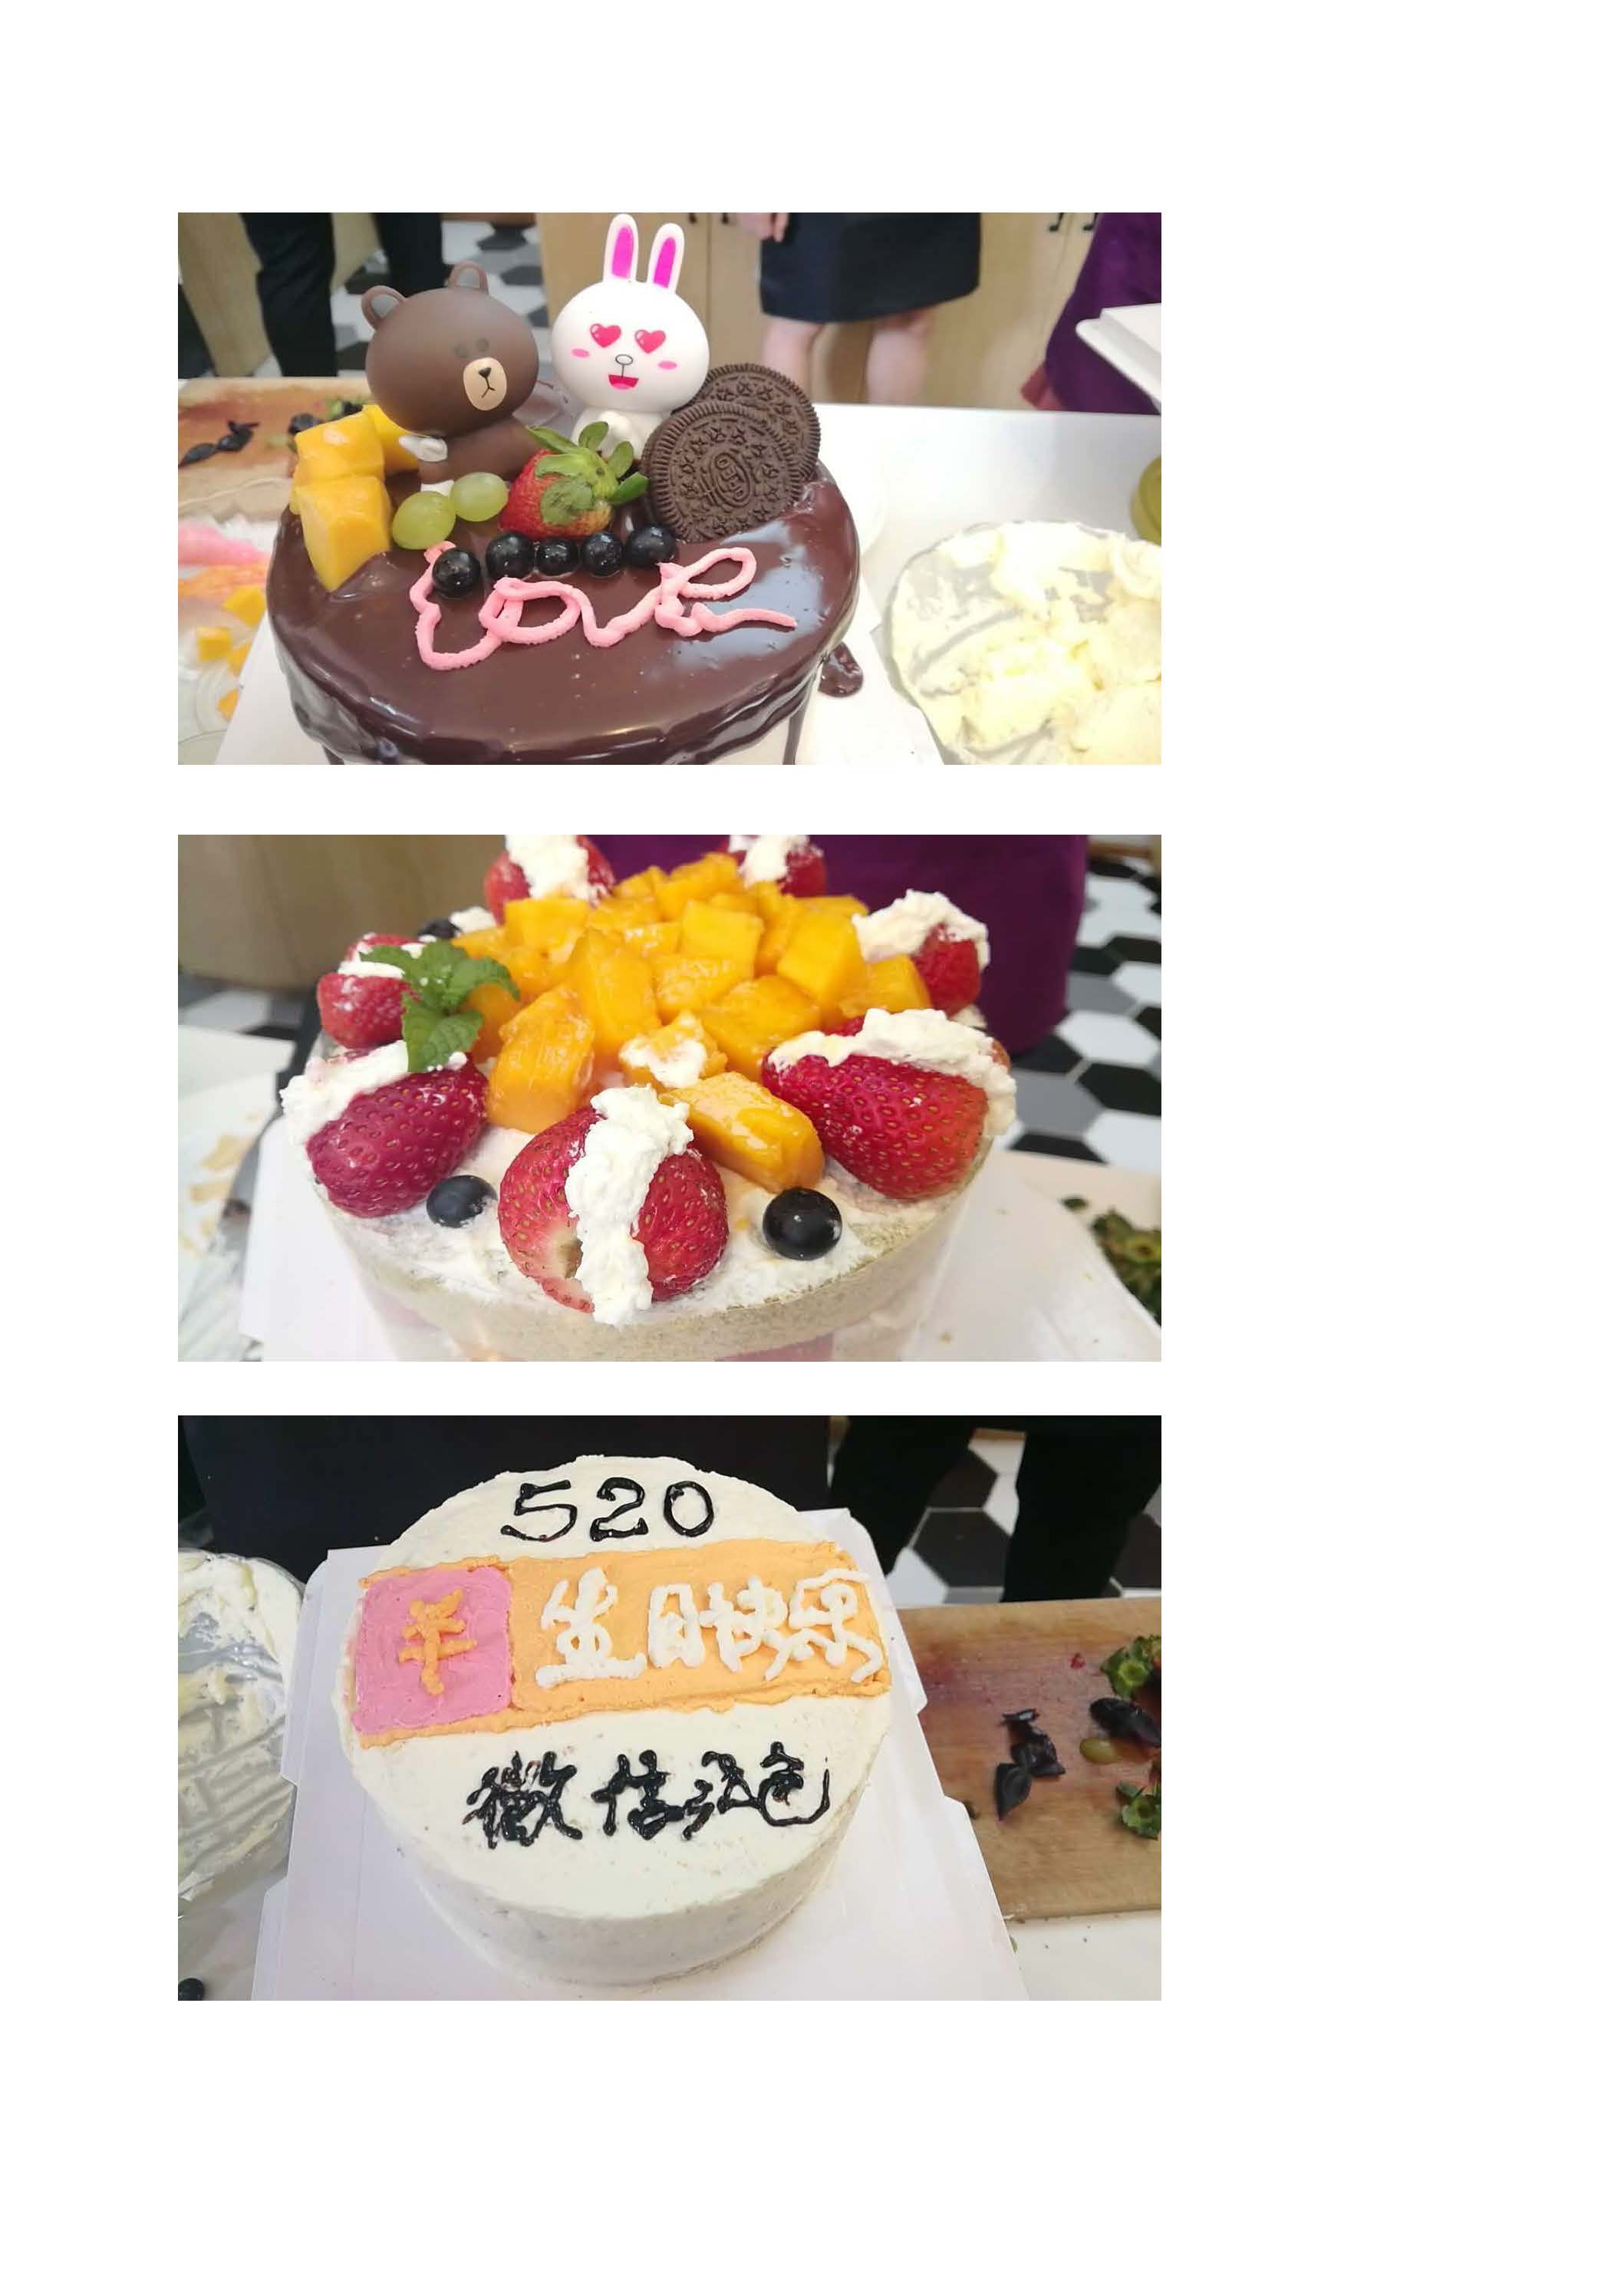 微笑的彩虹: 寿星公·燕菜生日蛋糕 Longevity Jelly Cake